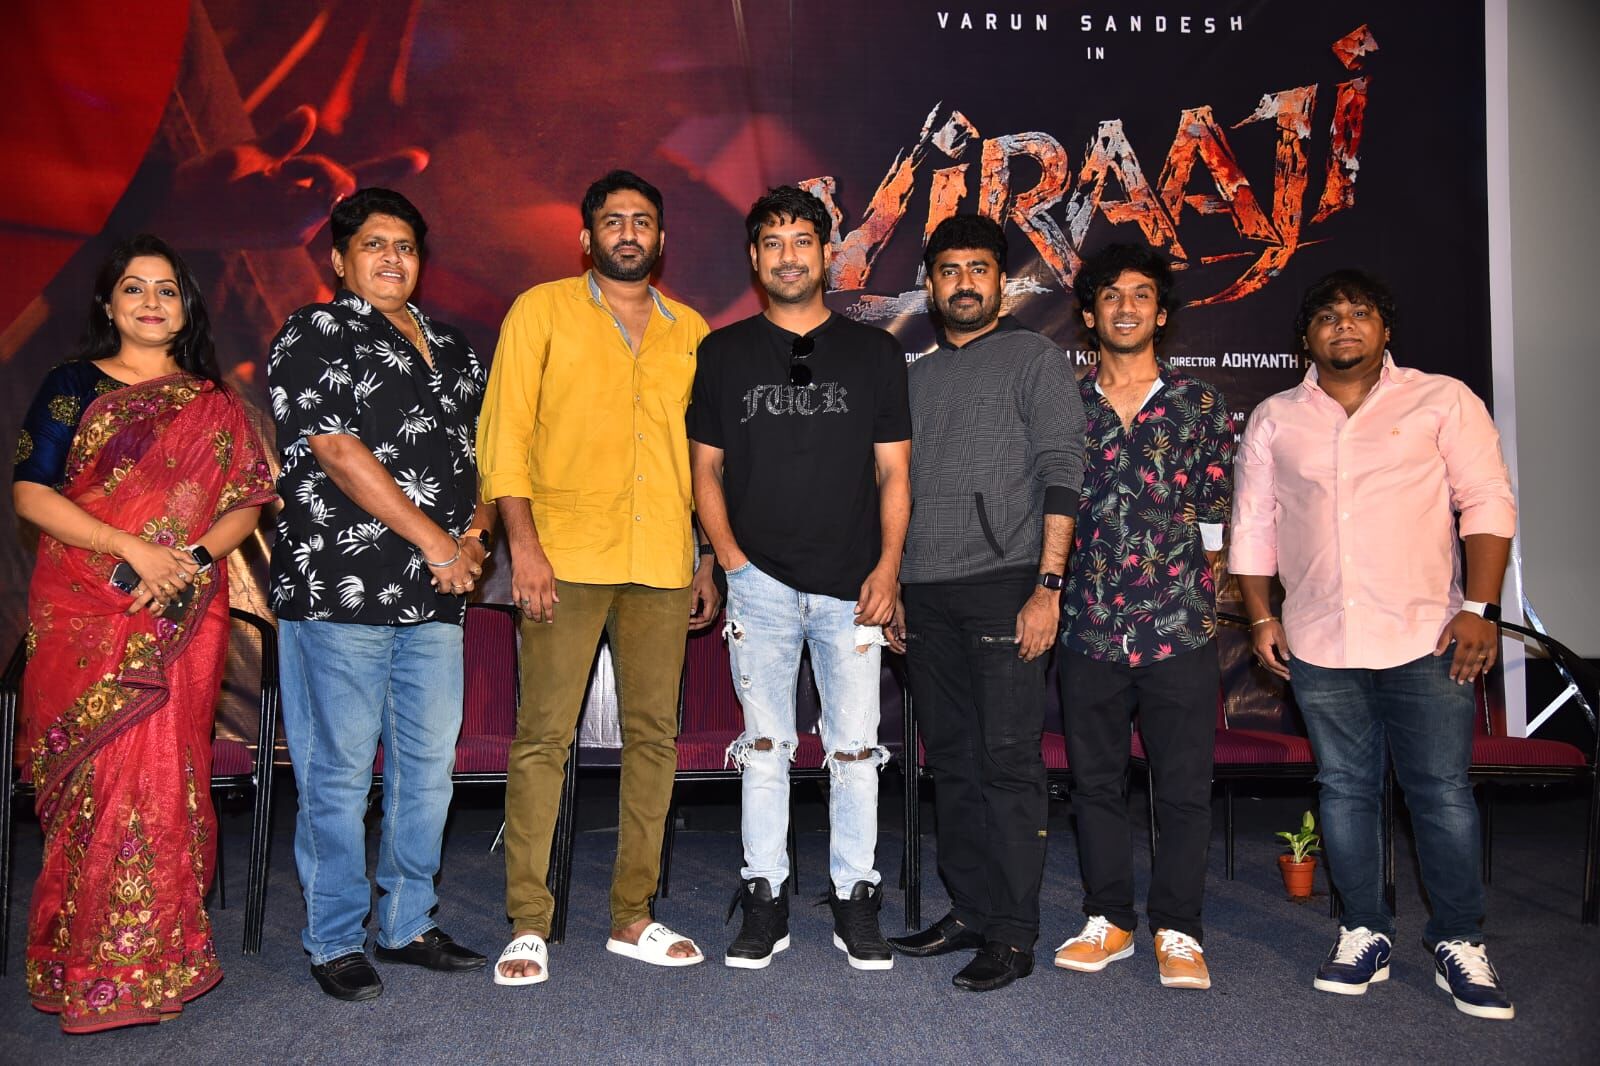 Varun Sandesh’s ‘Viraaji’ completes filming; set to hit screens on August 2